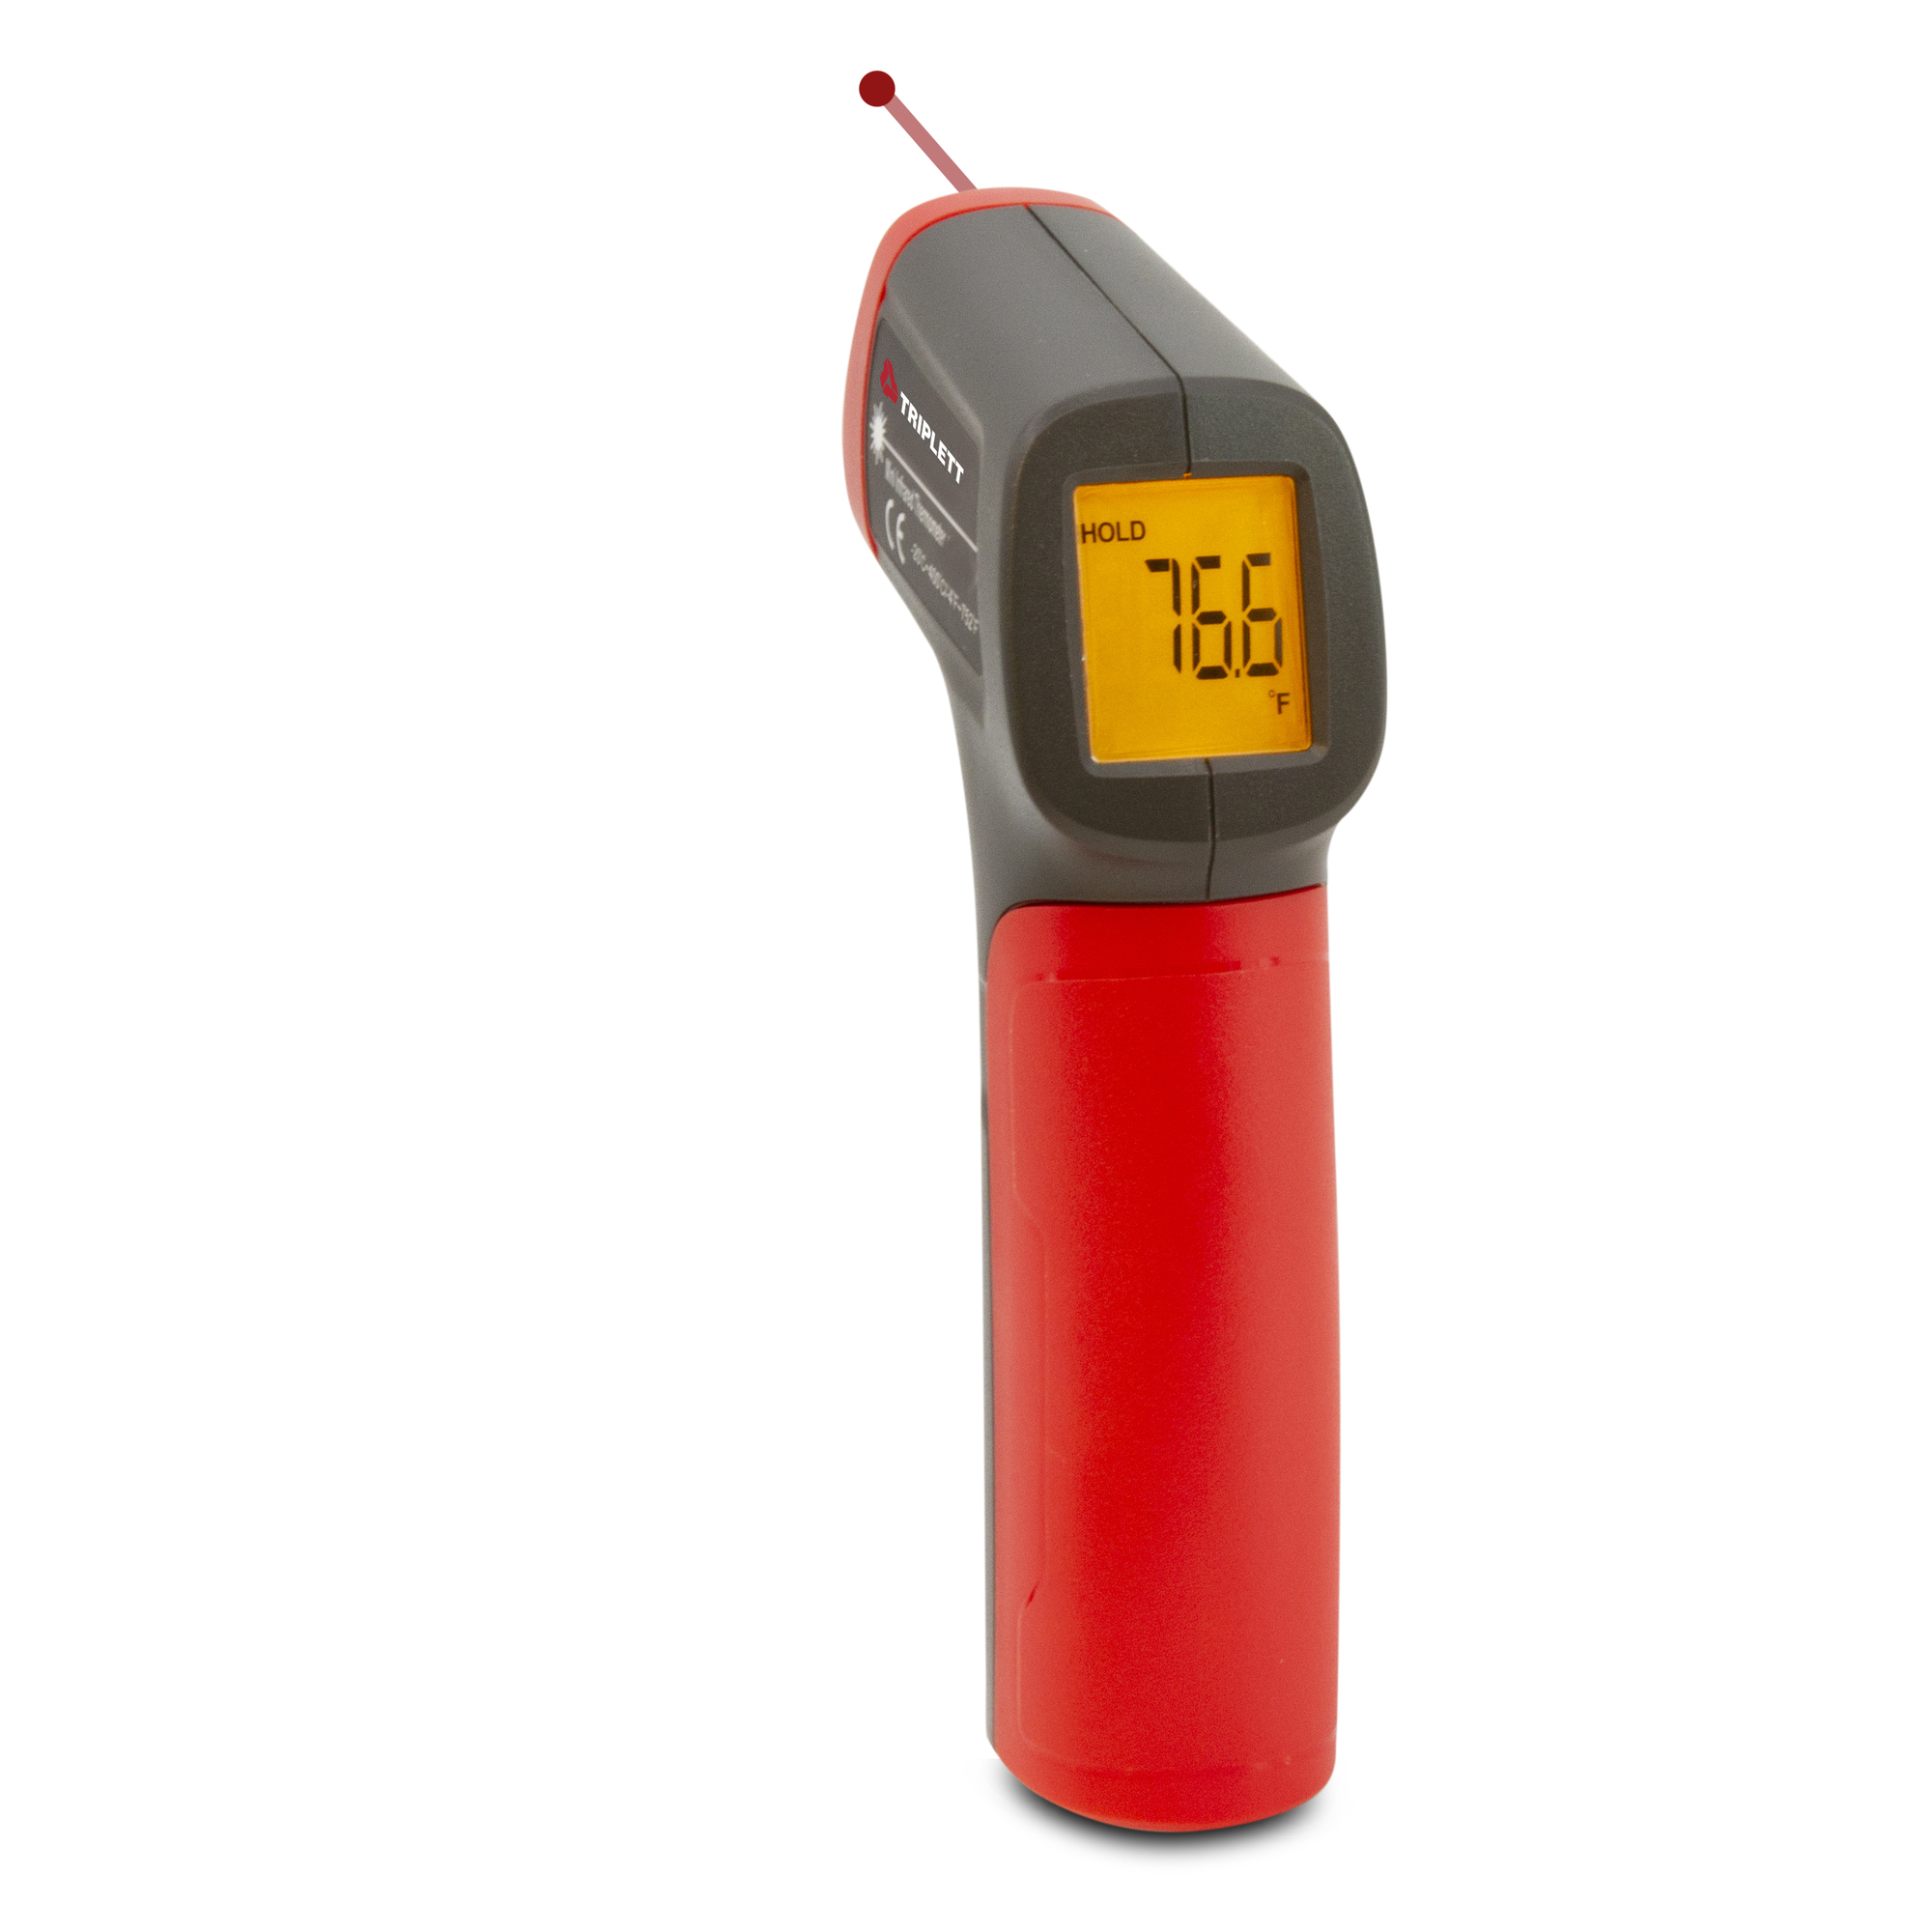 Triplett, 10:1 Mini IR Thermometer, Model IRT225